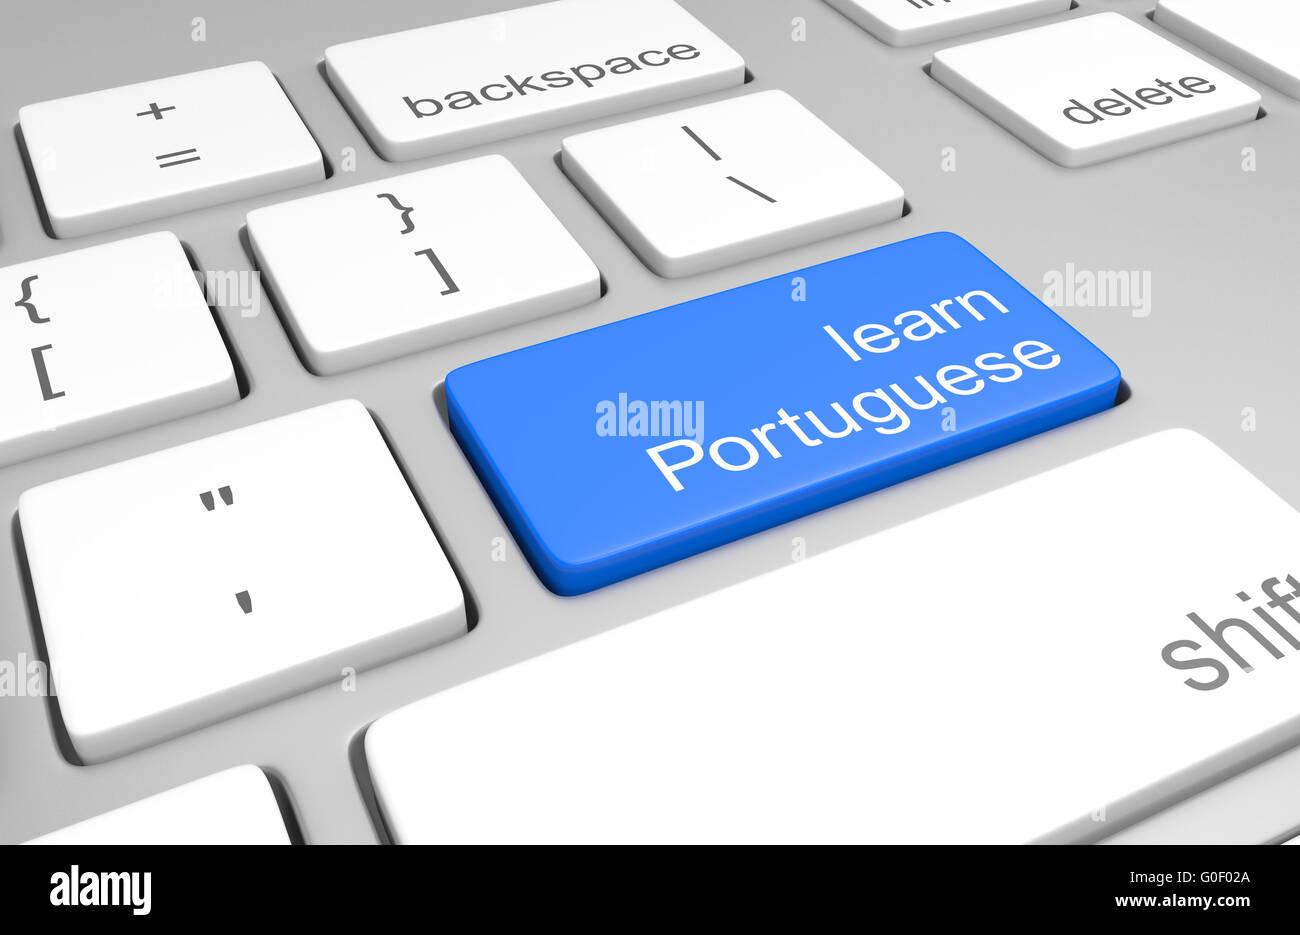 Apprendre le portugais touche sur un clavier d'ordinateur pour les classes en ligne de parler, lire et écrire la langue, rendu 3D Banque D'Images